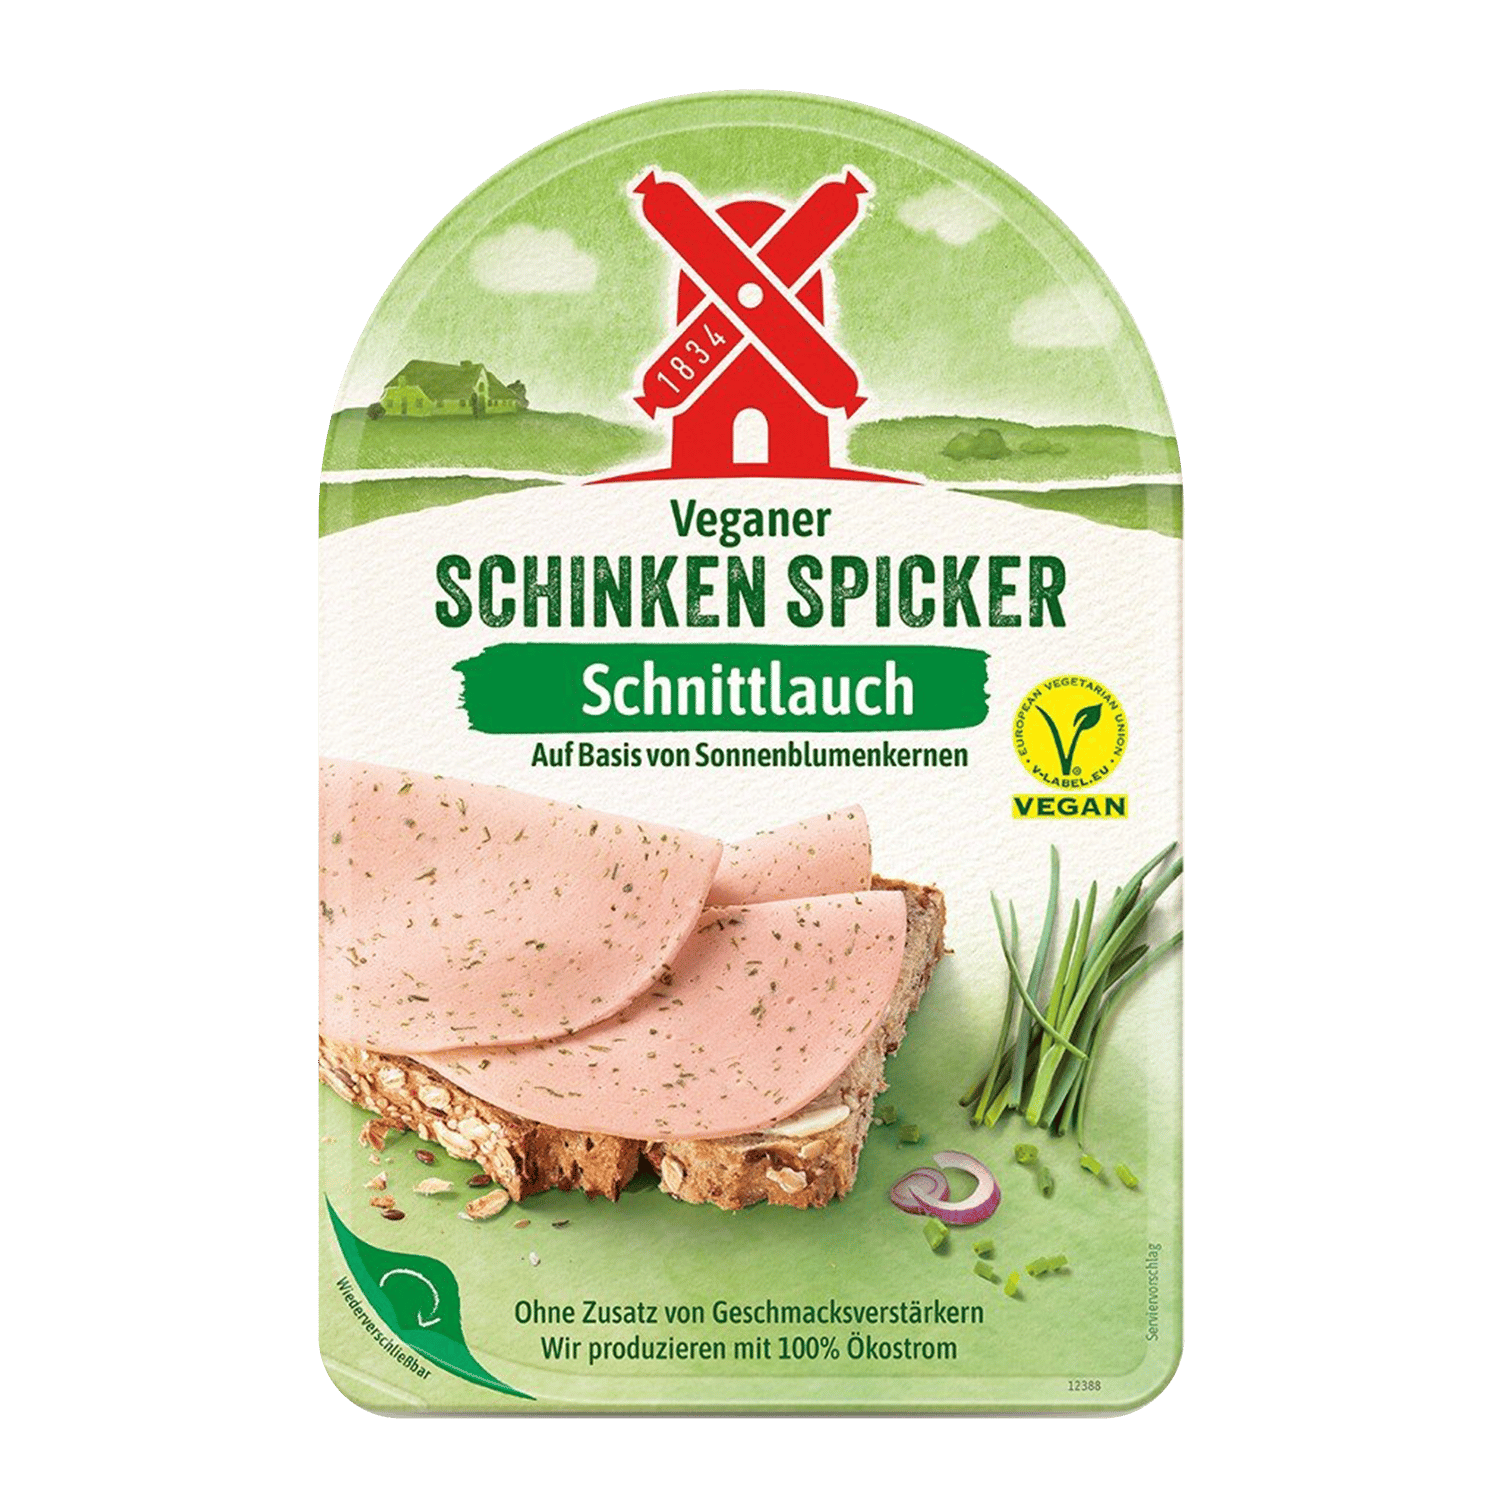 Veganer Schinken Spicker Schnittlauch, 80g